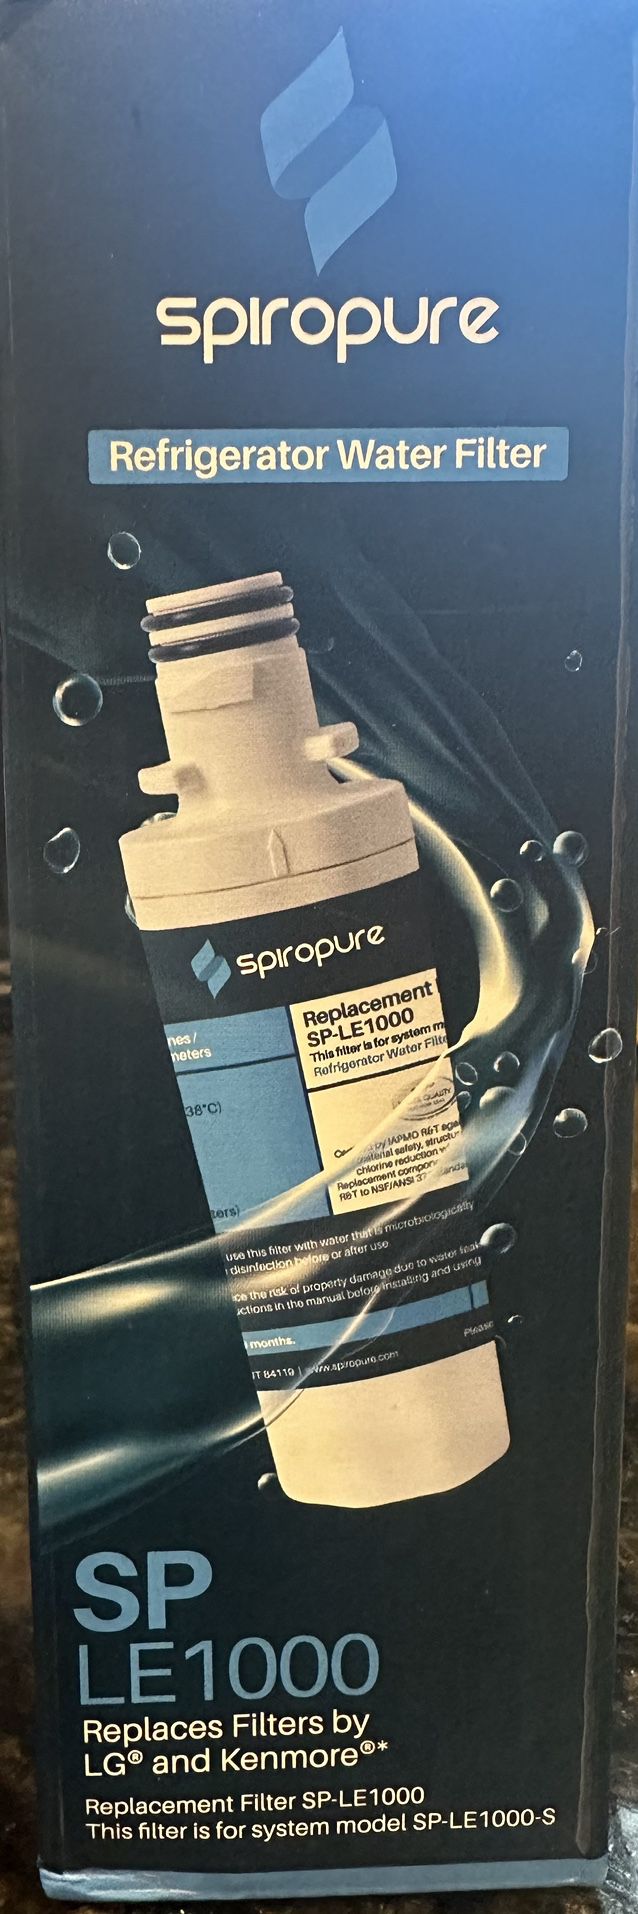 SpiroPure Refrigerator Water Filter